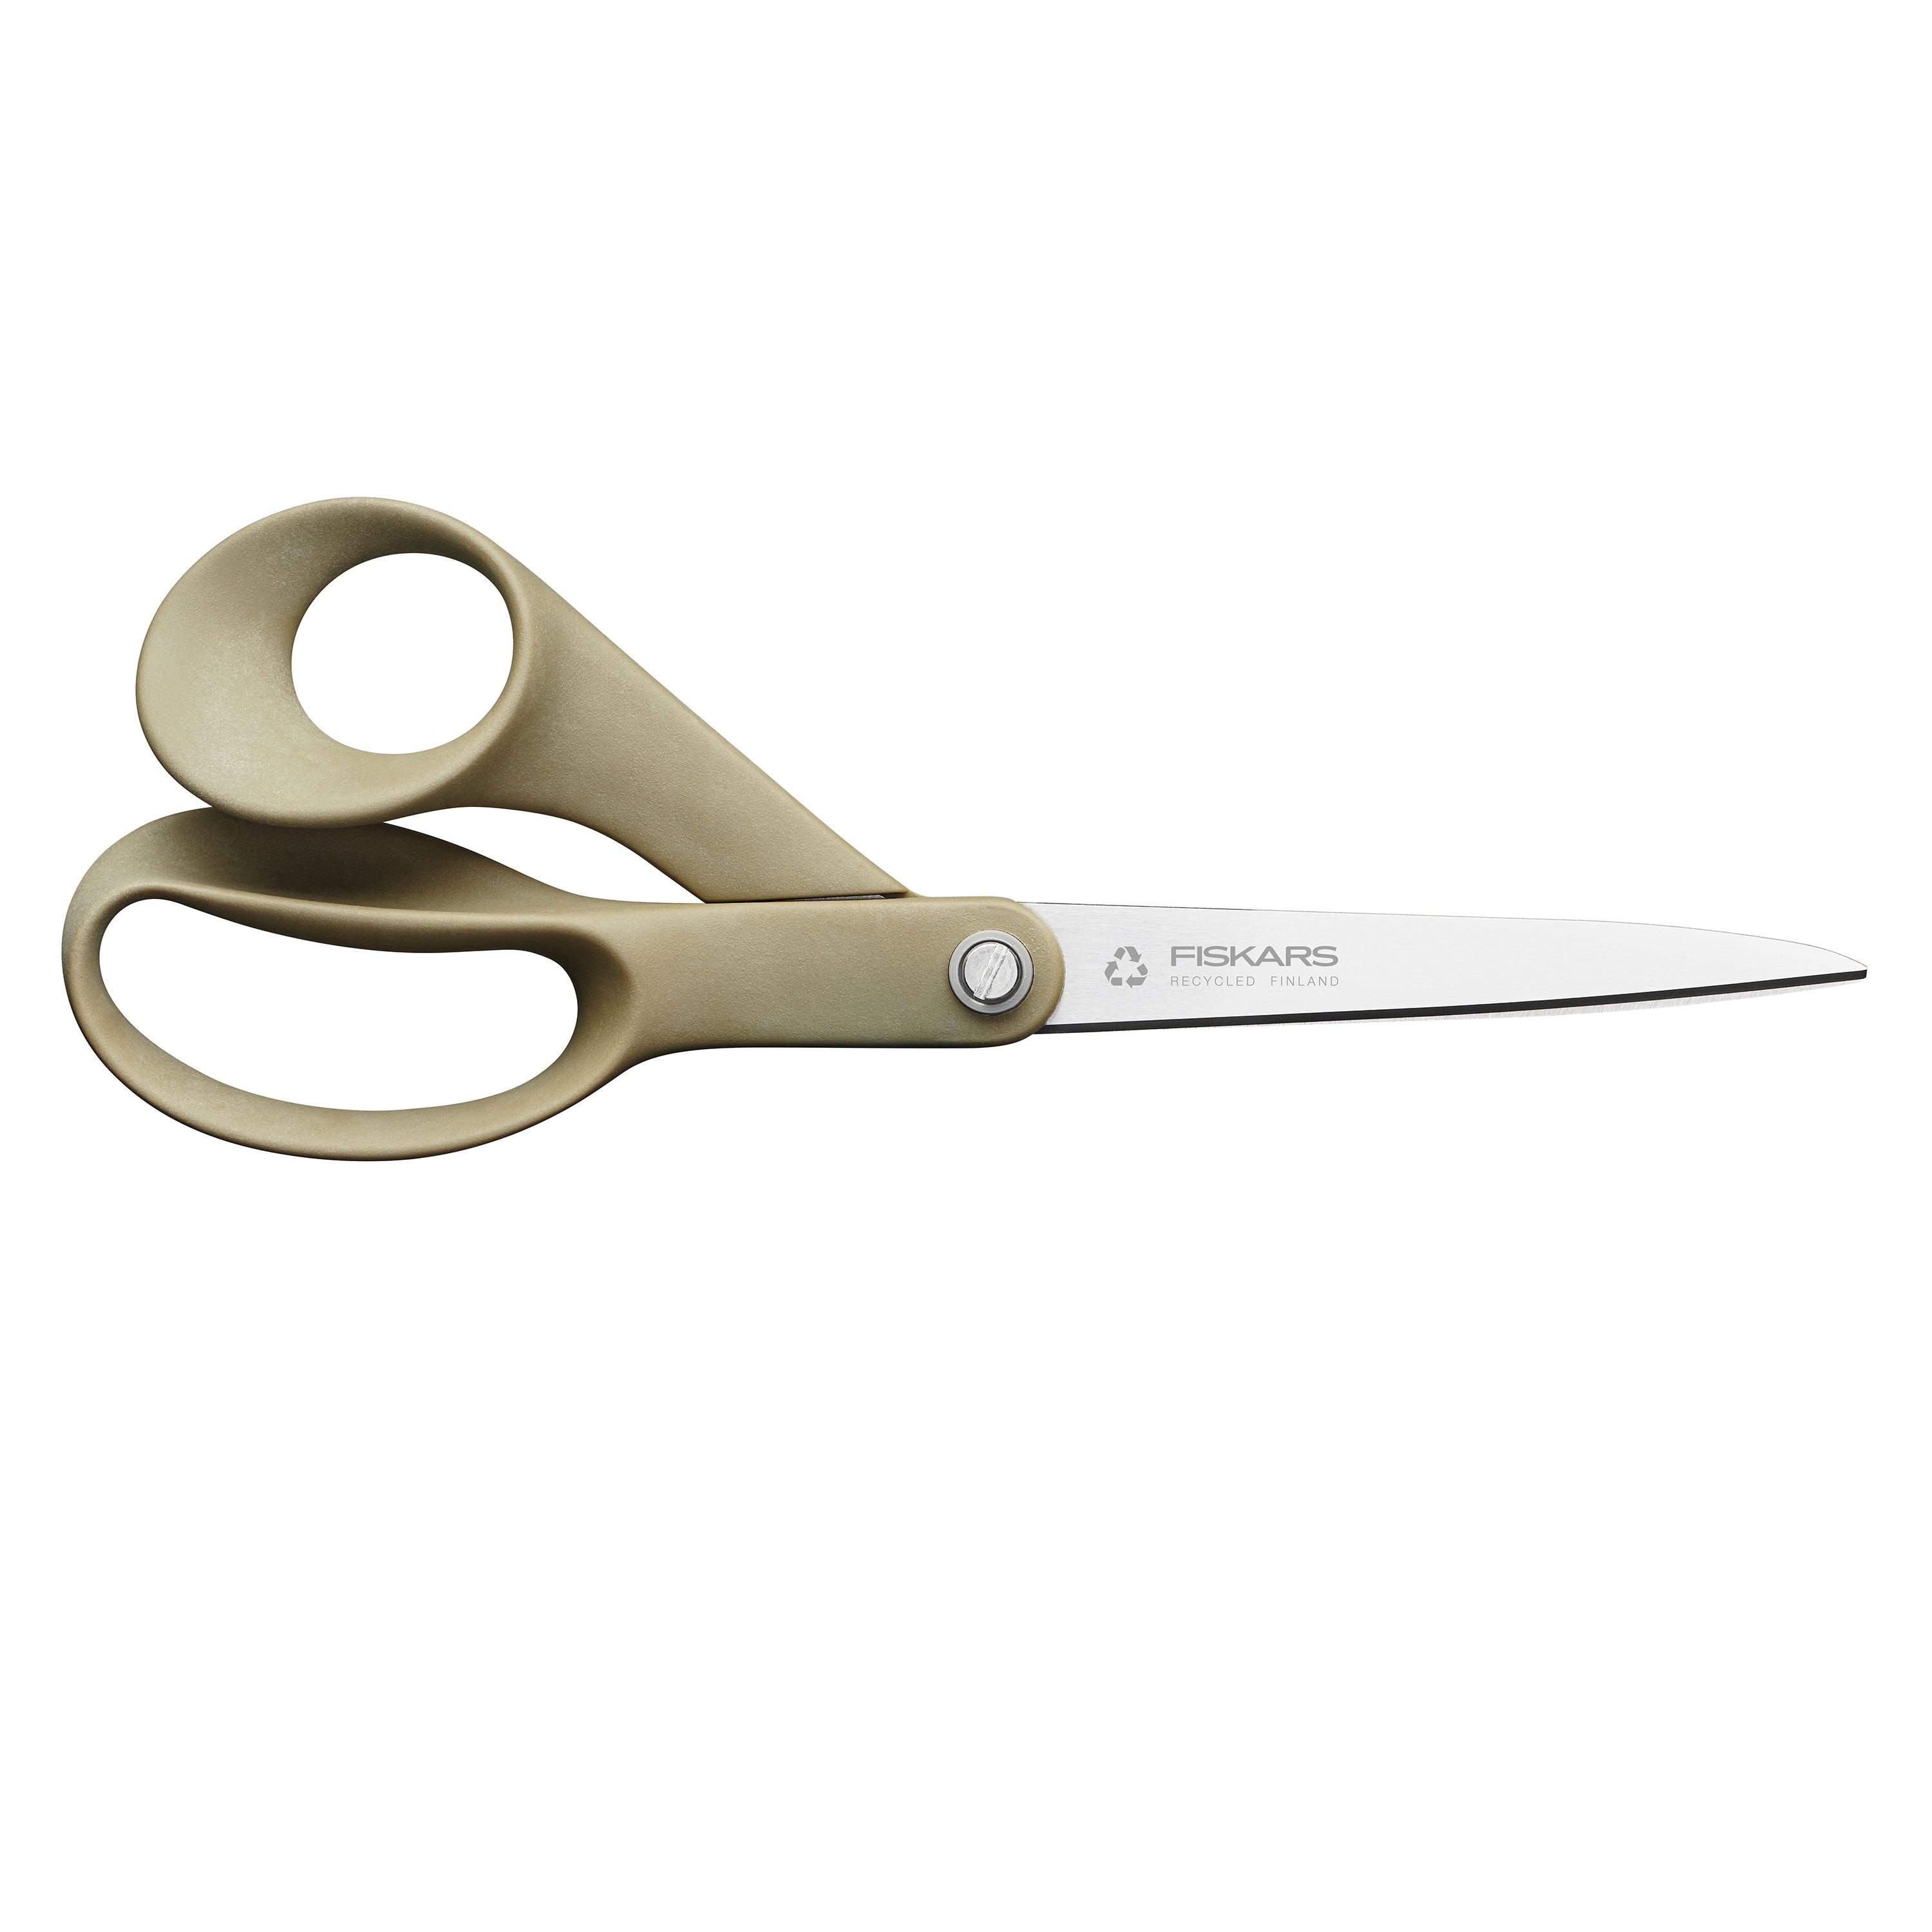 fiskars scissors sharpener Review: Revitalize Your Scissors' Performance! 